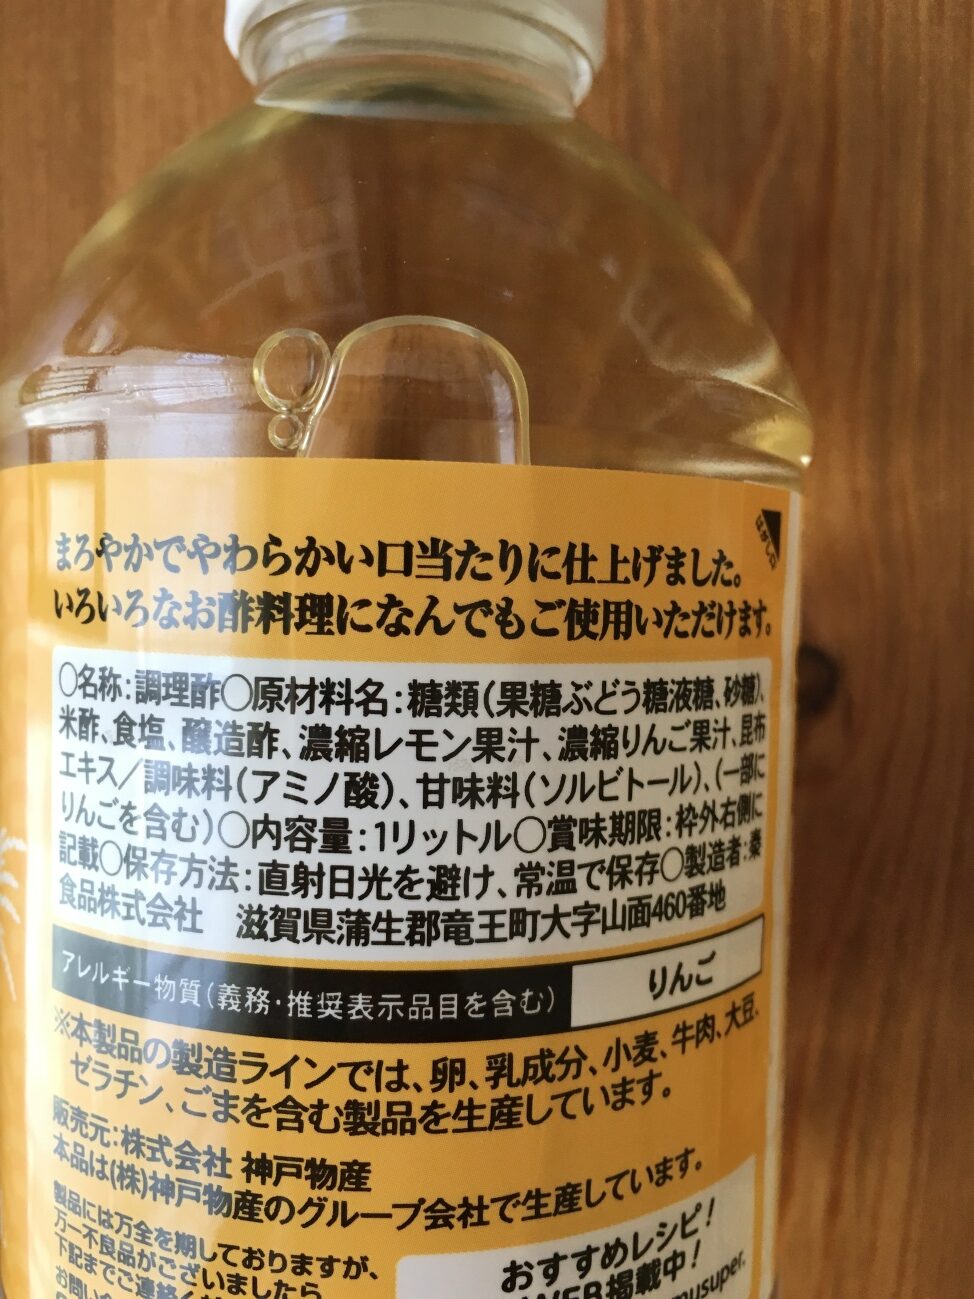 業務スーパーの「なんでもできるっ酢」の原材料名と製造者名の表記